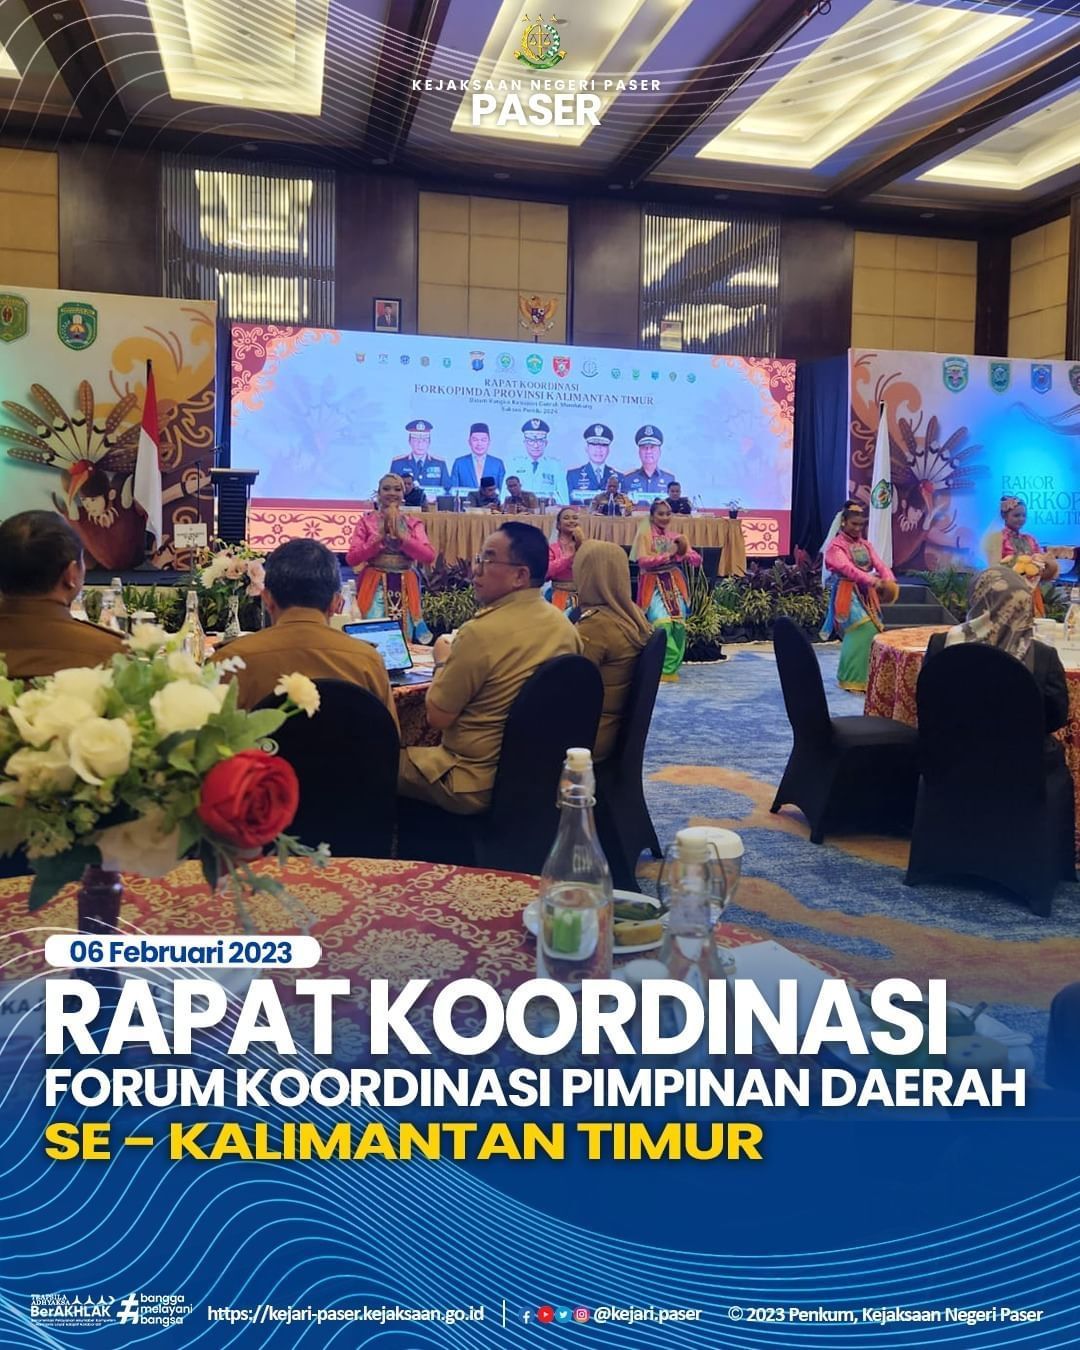 Rapat Koordinasi Forum Koordinasi Pimpinan Daerah se-Kalikantan Timur